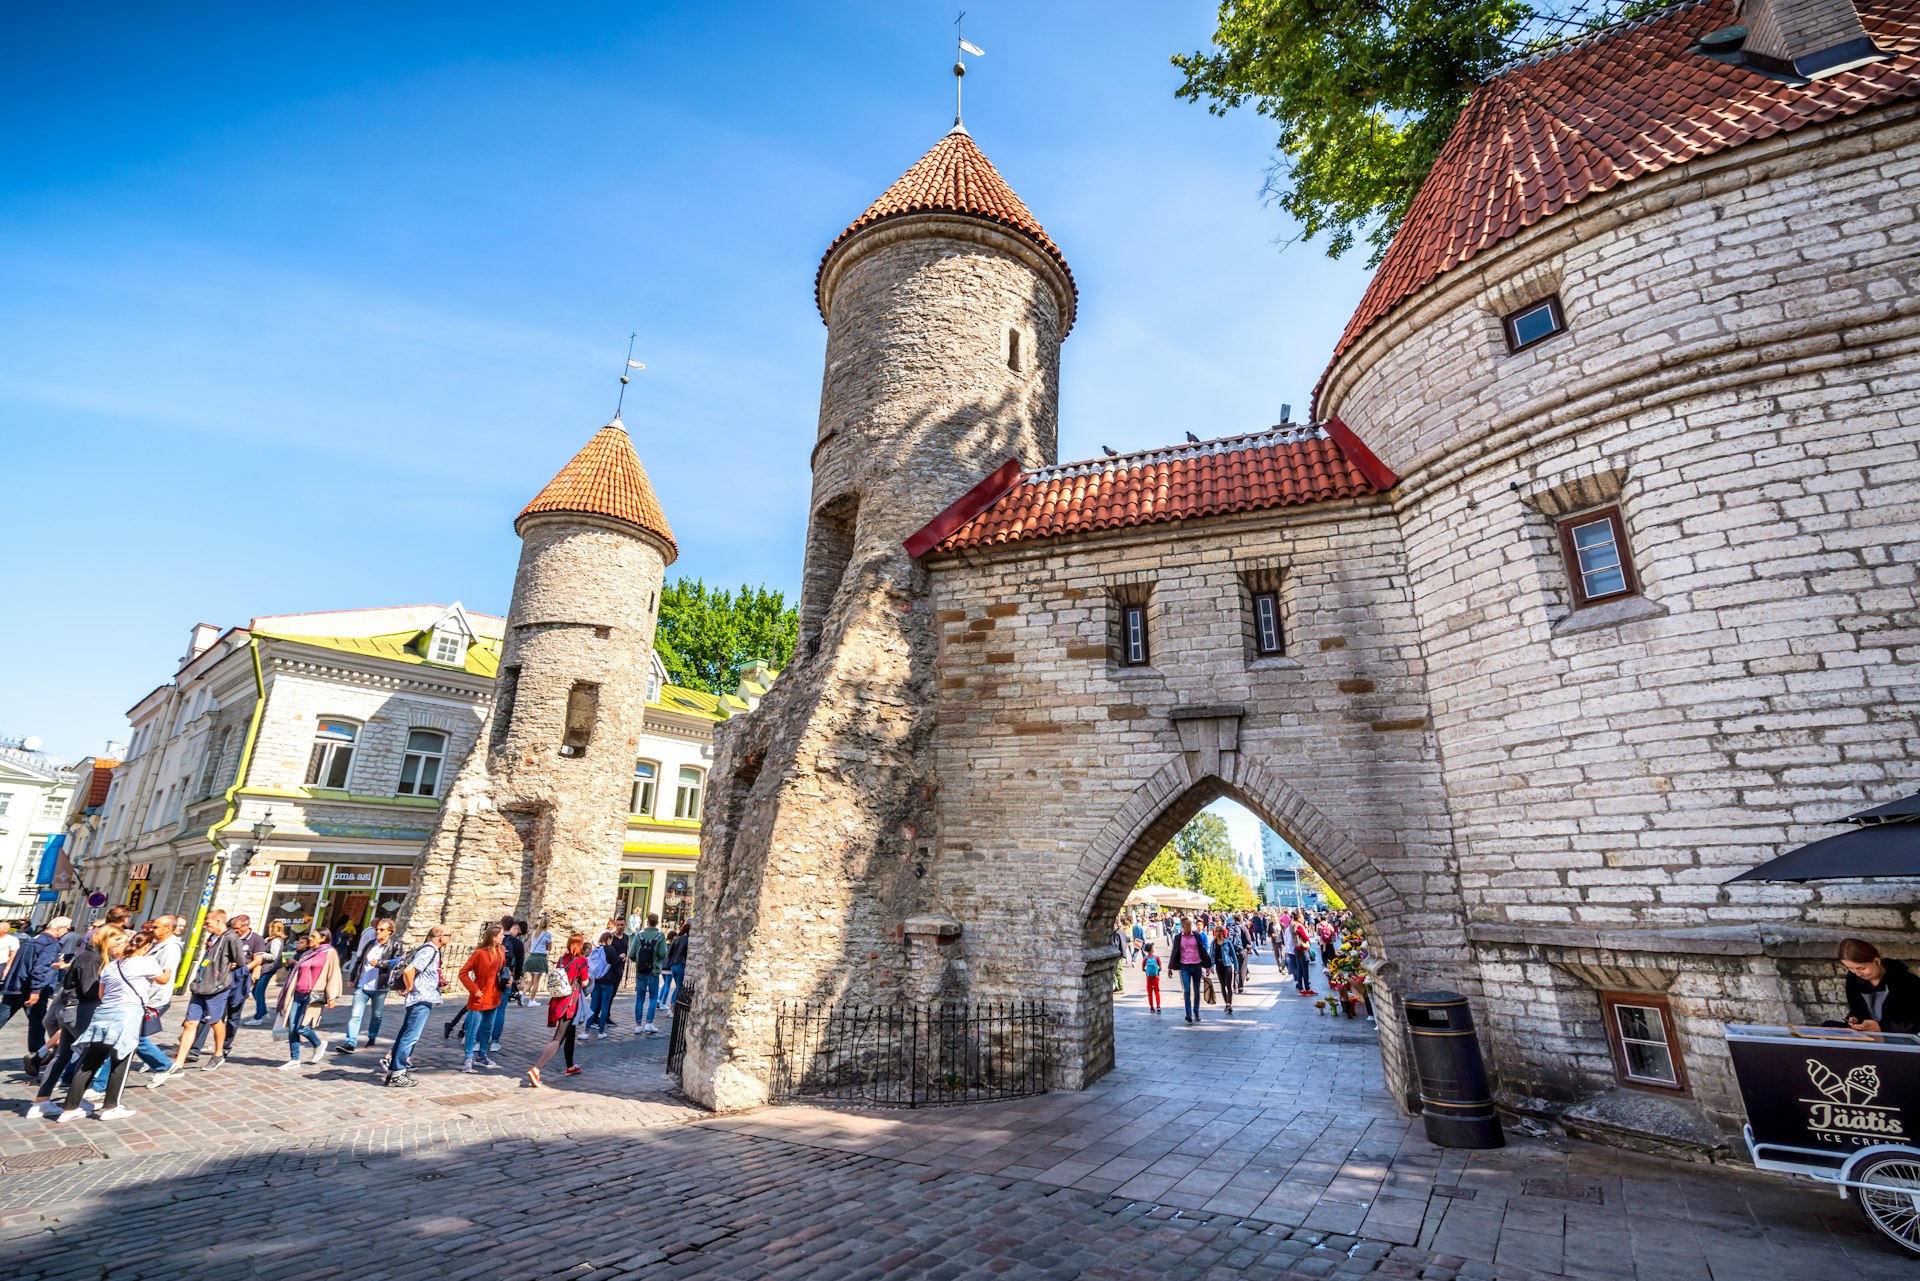 Twin towers of Viru Gate in the OId Town of Tallinn, Estonia